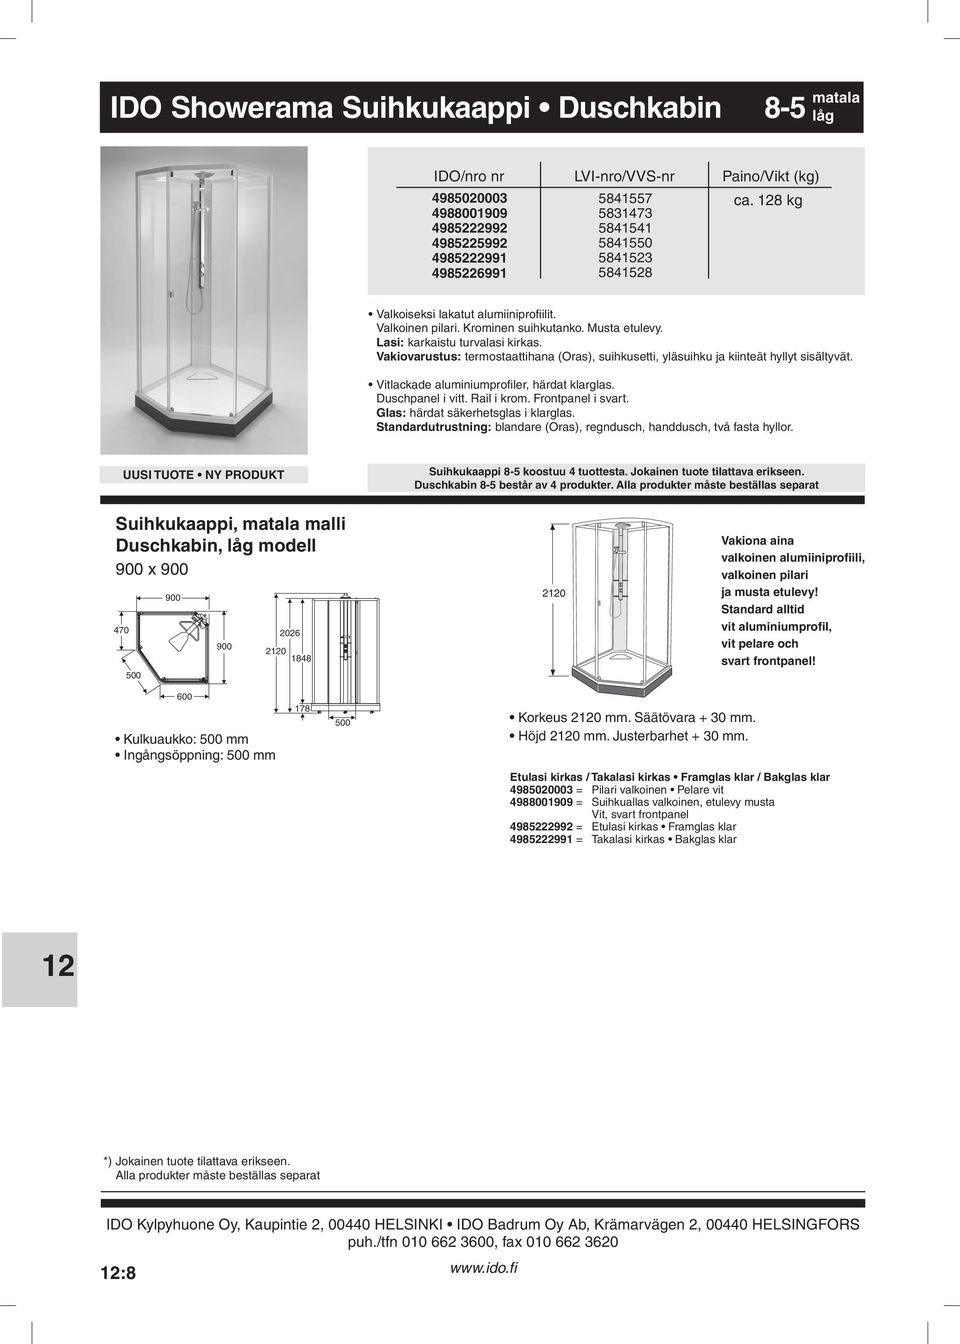 Vitlackade aluminiumprofiler, härdat klarglas Duschpanel i vitt Rail i krom Frontpanel i svart Glas: härdat säkerhetsglas i klarglas Standardutrustning: blandare (Oras), regndusch, handdusch, två